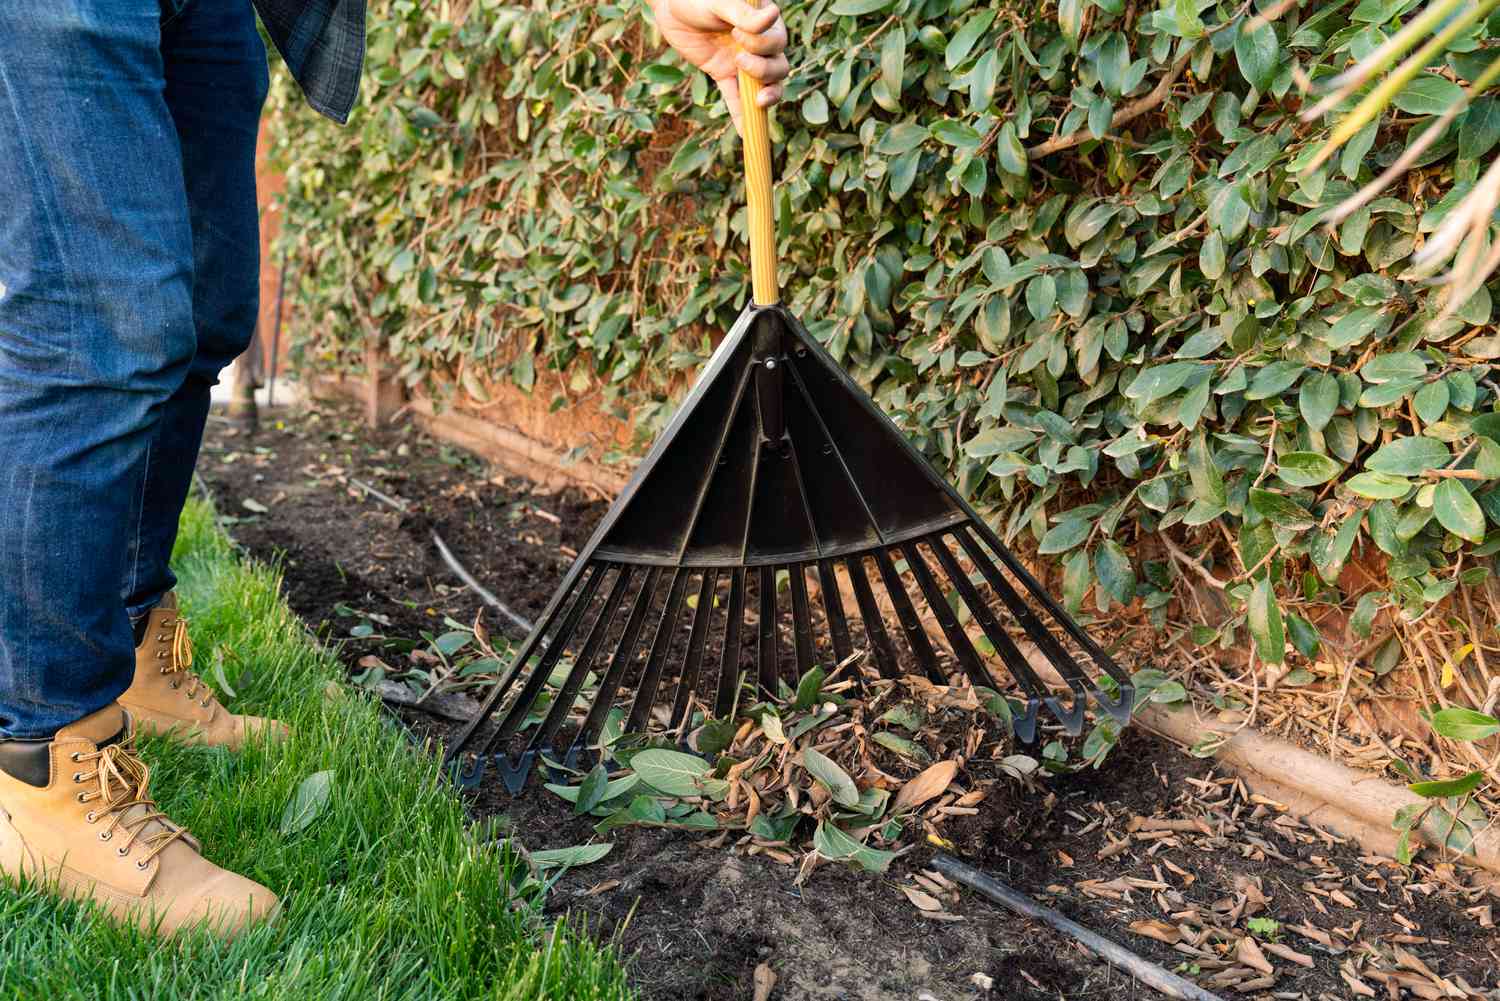 Person using a garden rake